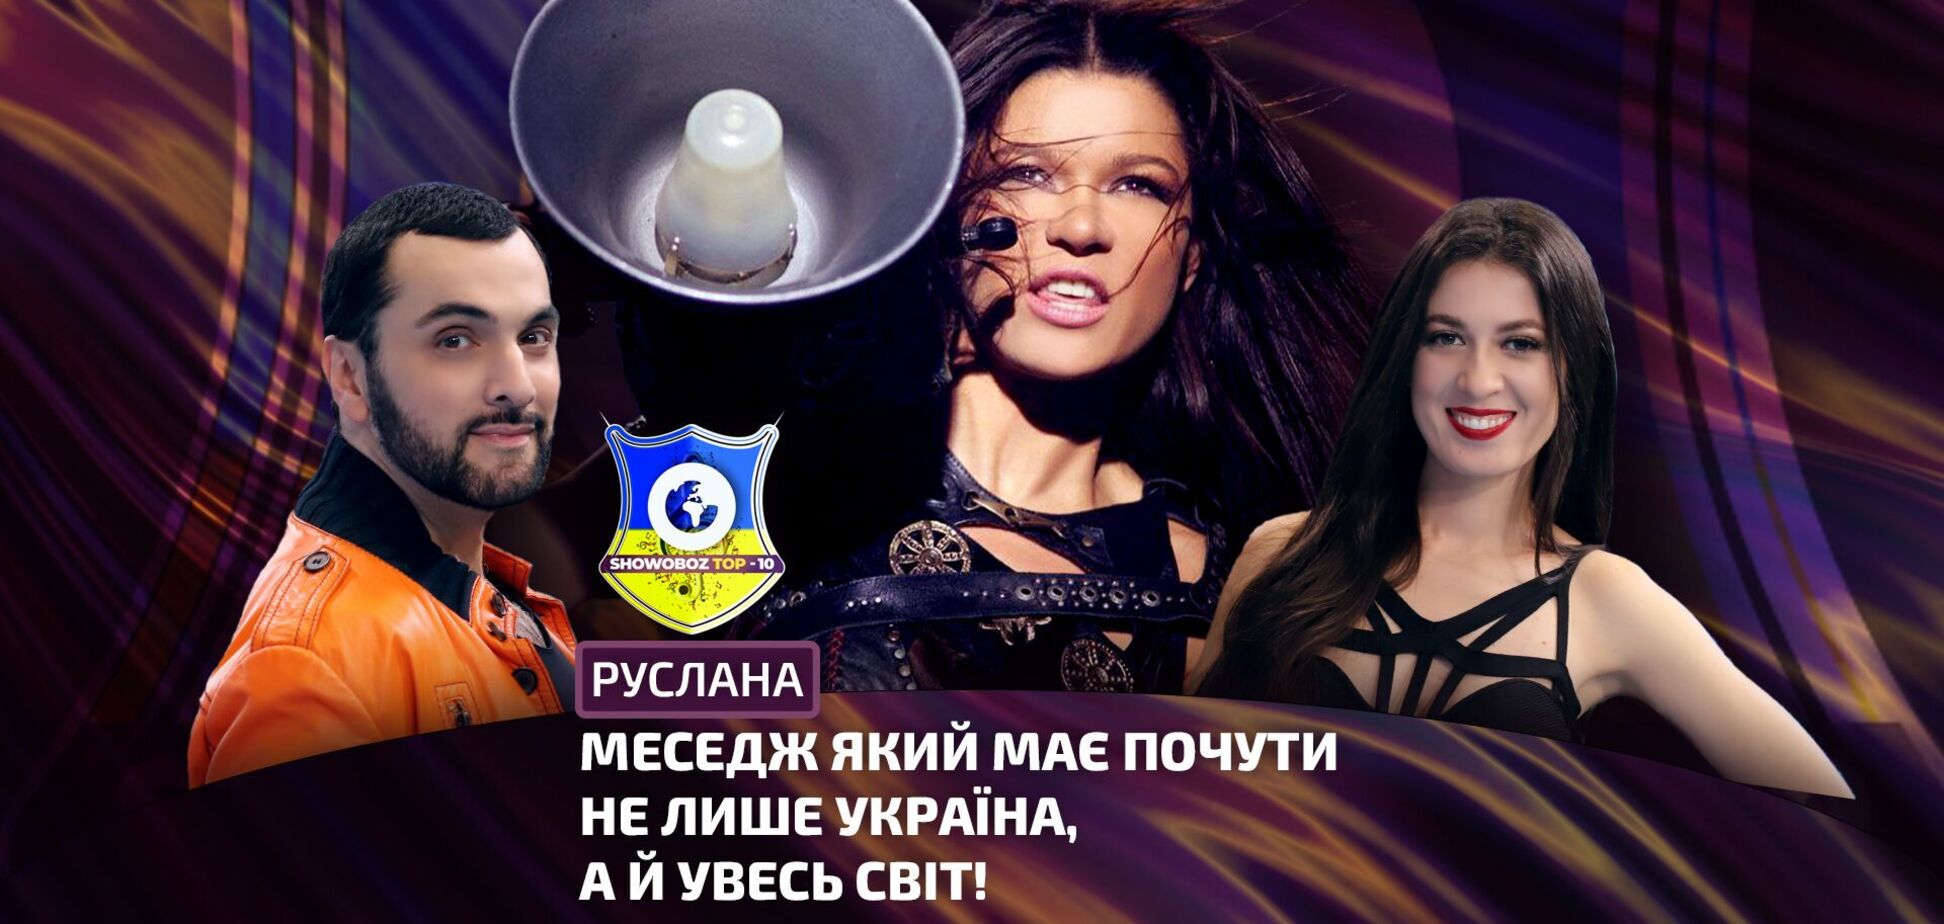 Руслана: Кто он, 'Безымянный Герой', что такое победа для Украины. Долгожданная премьера песни 'Я жива'!